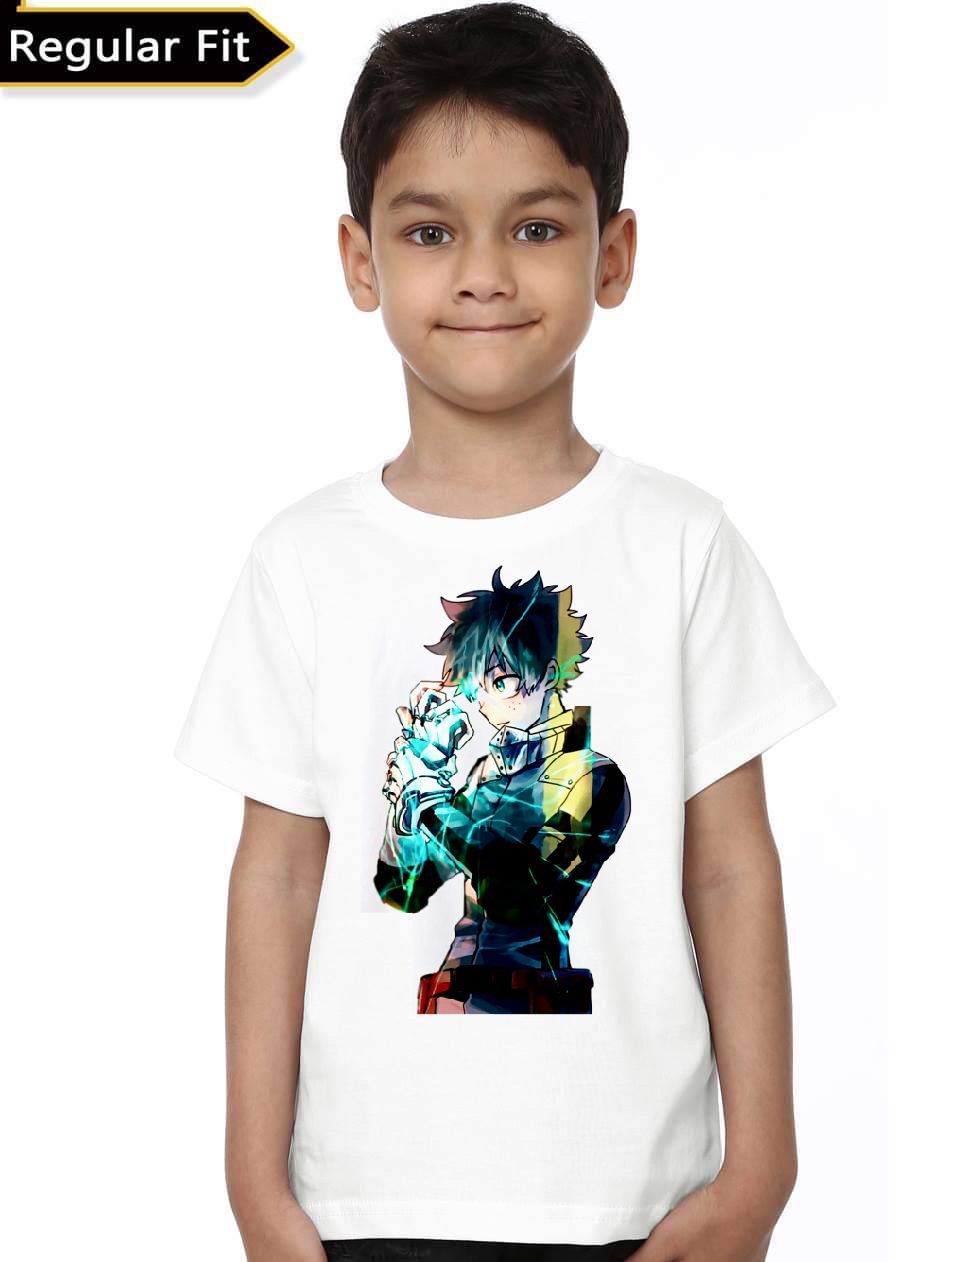 Anime Kids TShirt  Swag Shirts